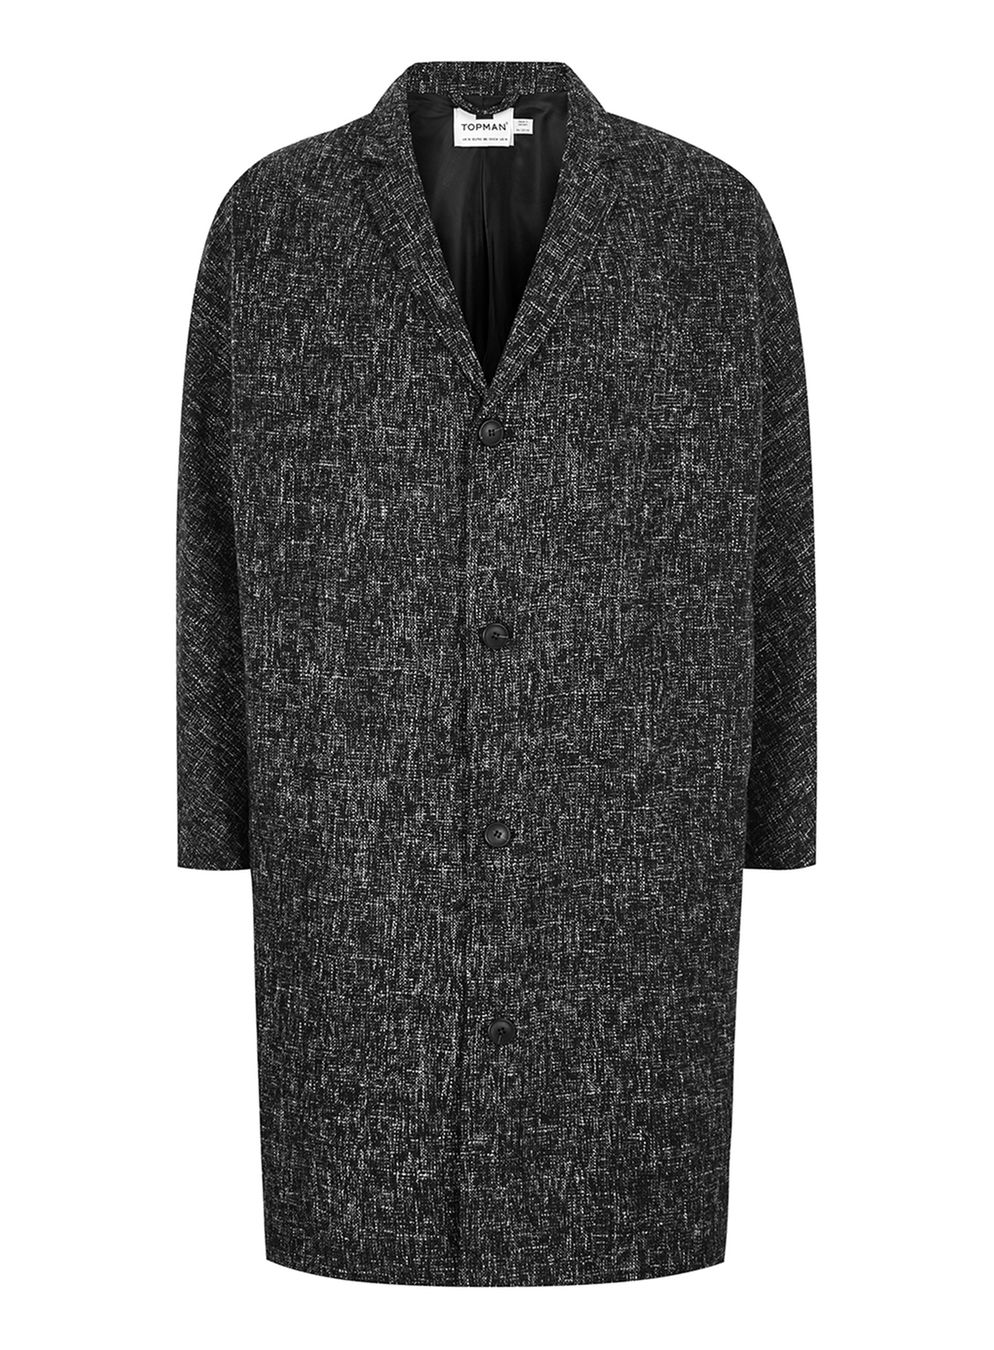 Black White Textured Oversized Overcoat £68 